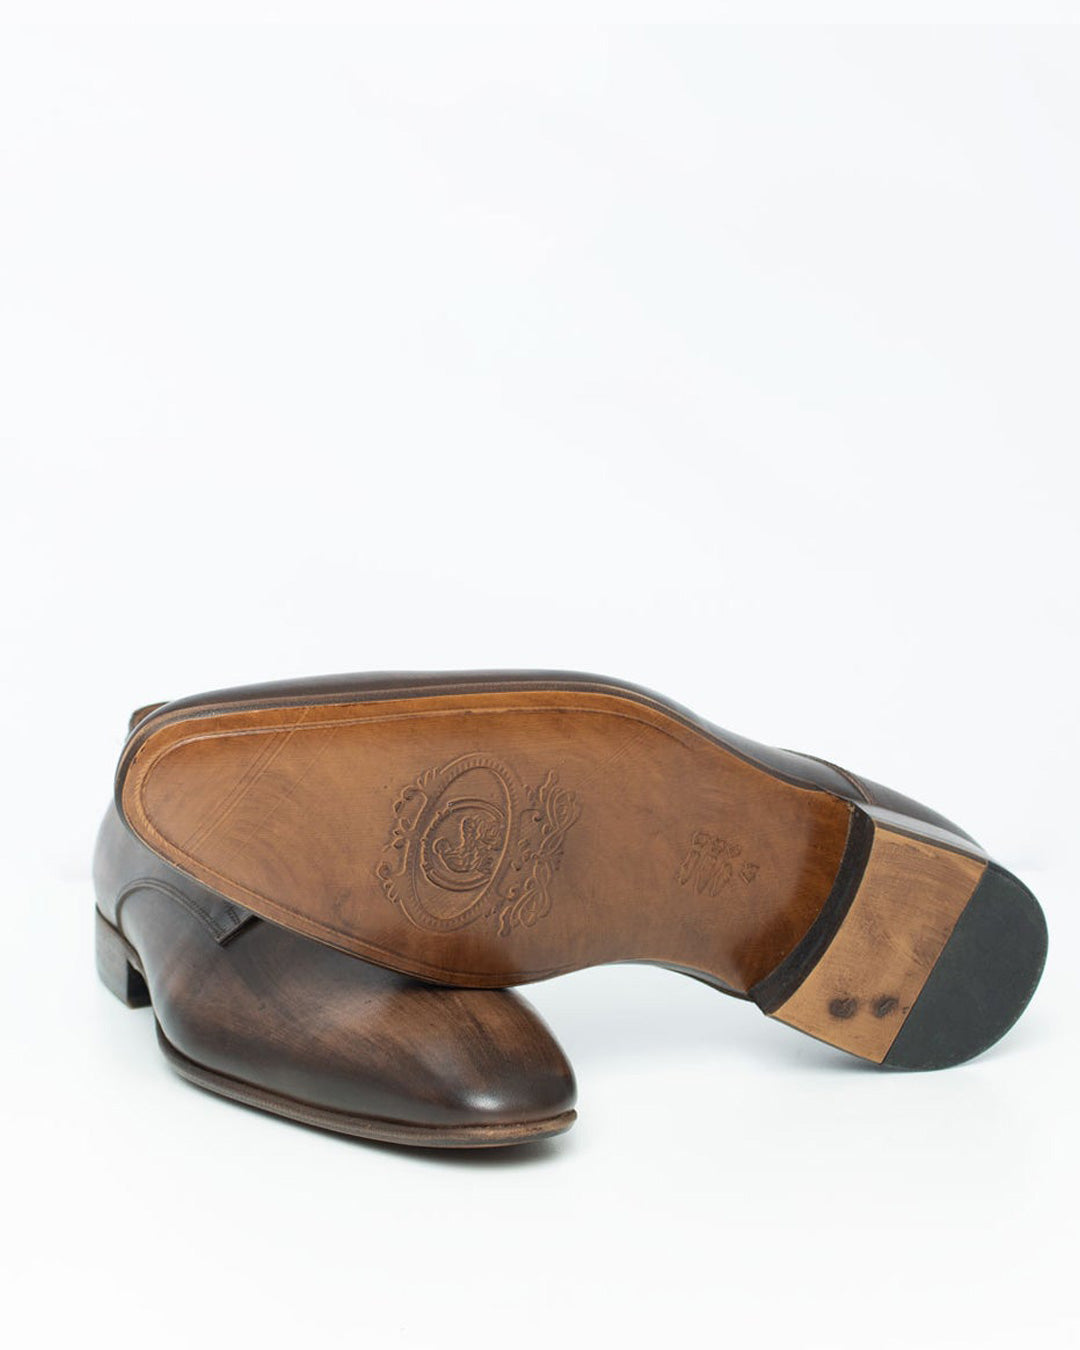 Calvano Plain Brown Mens formal shoe